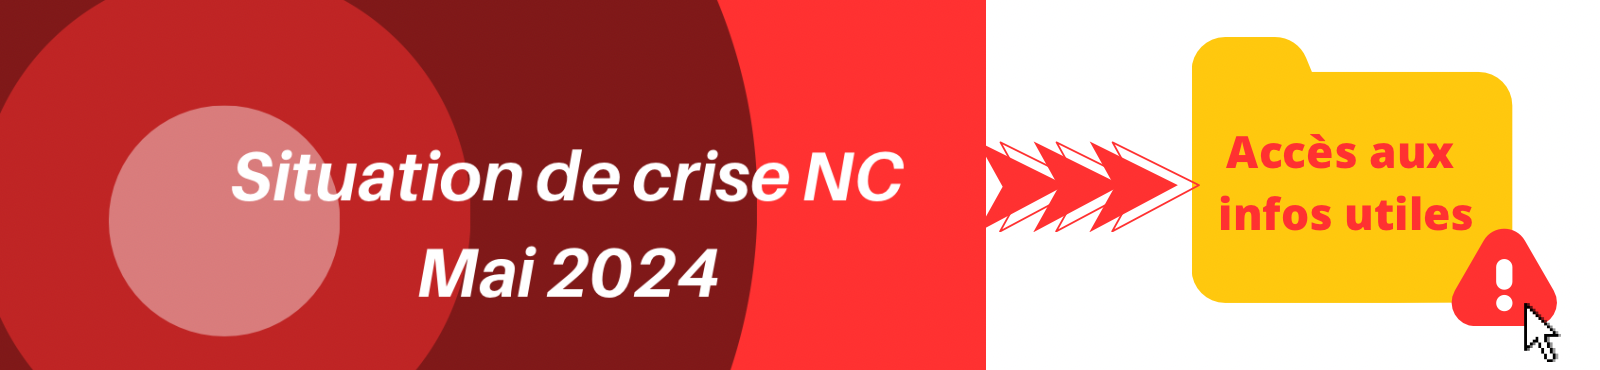 ESPACE CRISE NC – MAI 2024